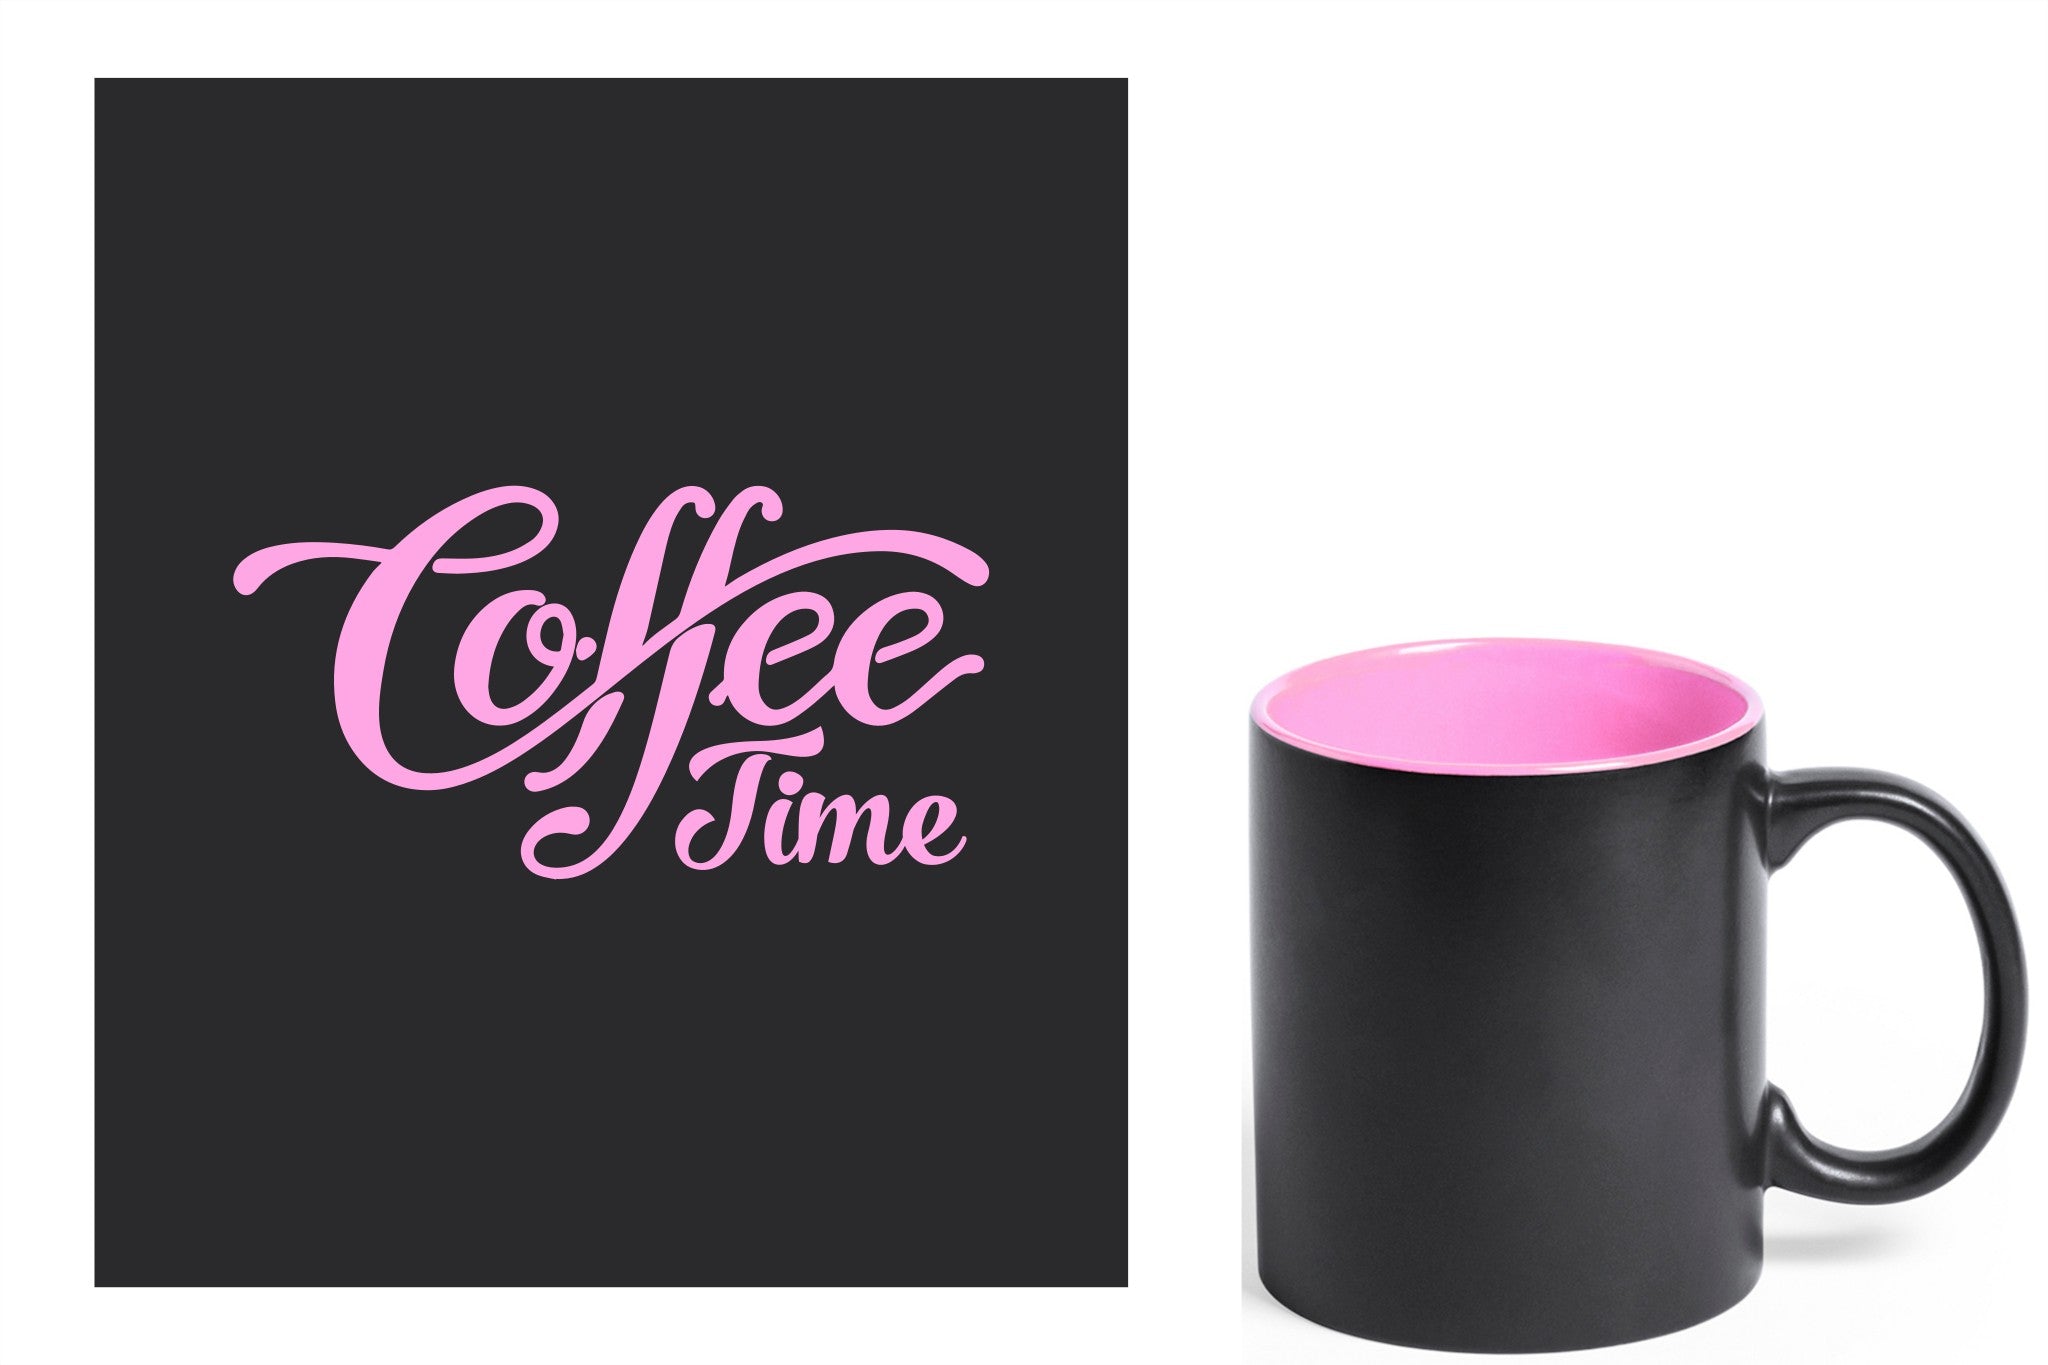 zwarte keramische mok met roze gravure  'Coffee time'.